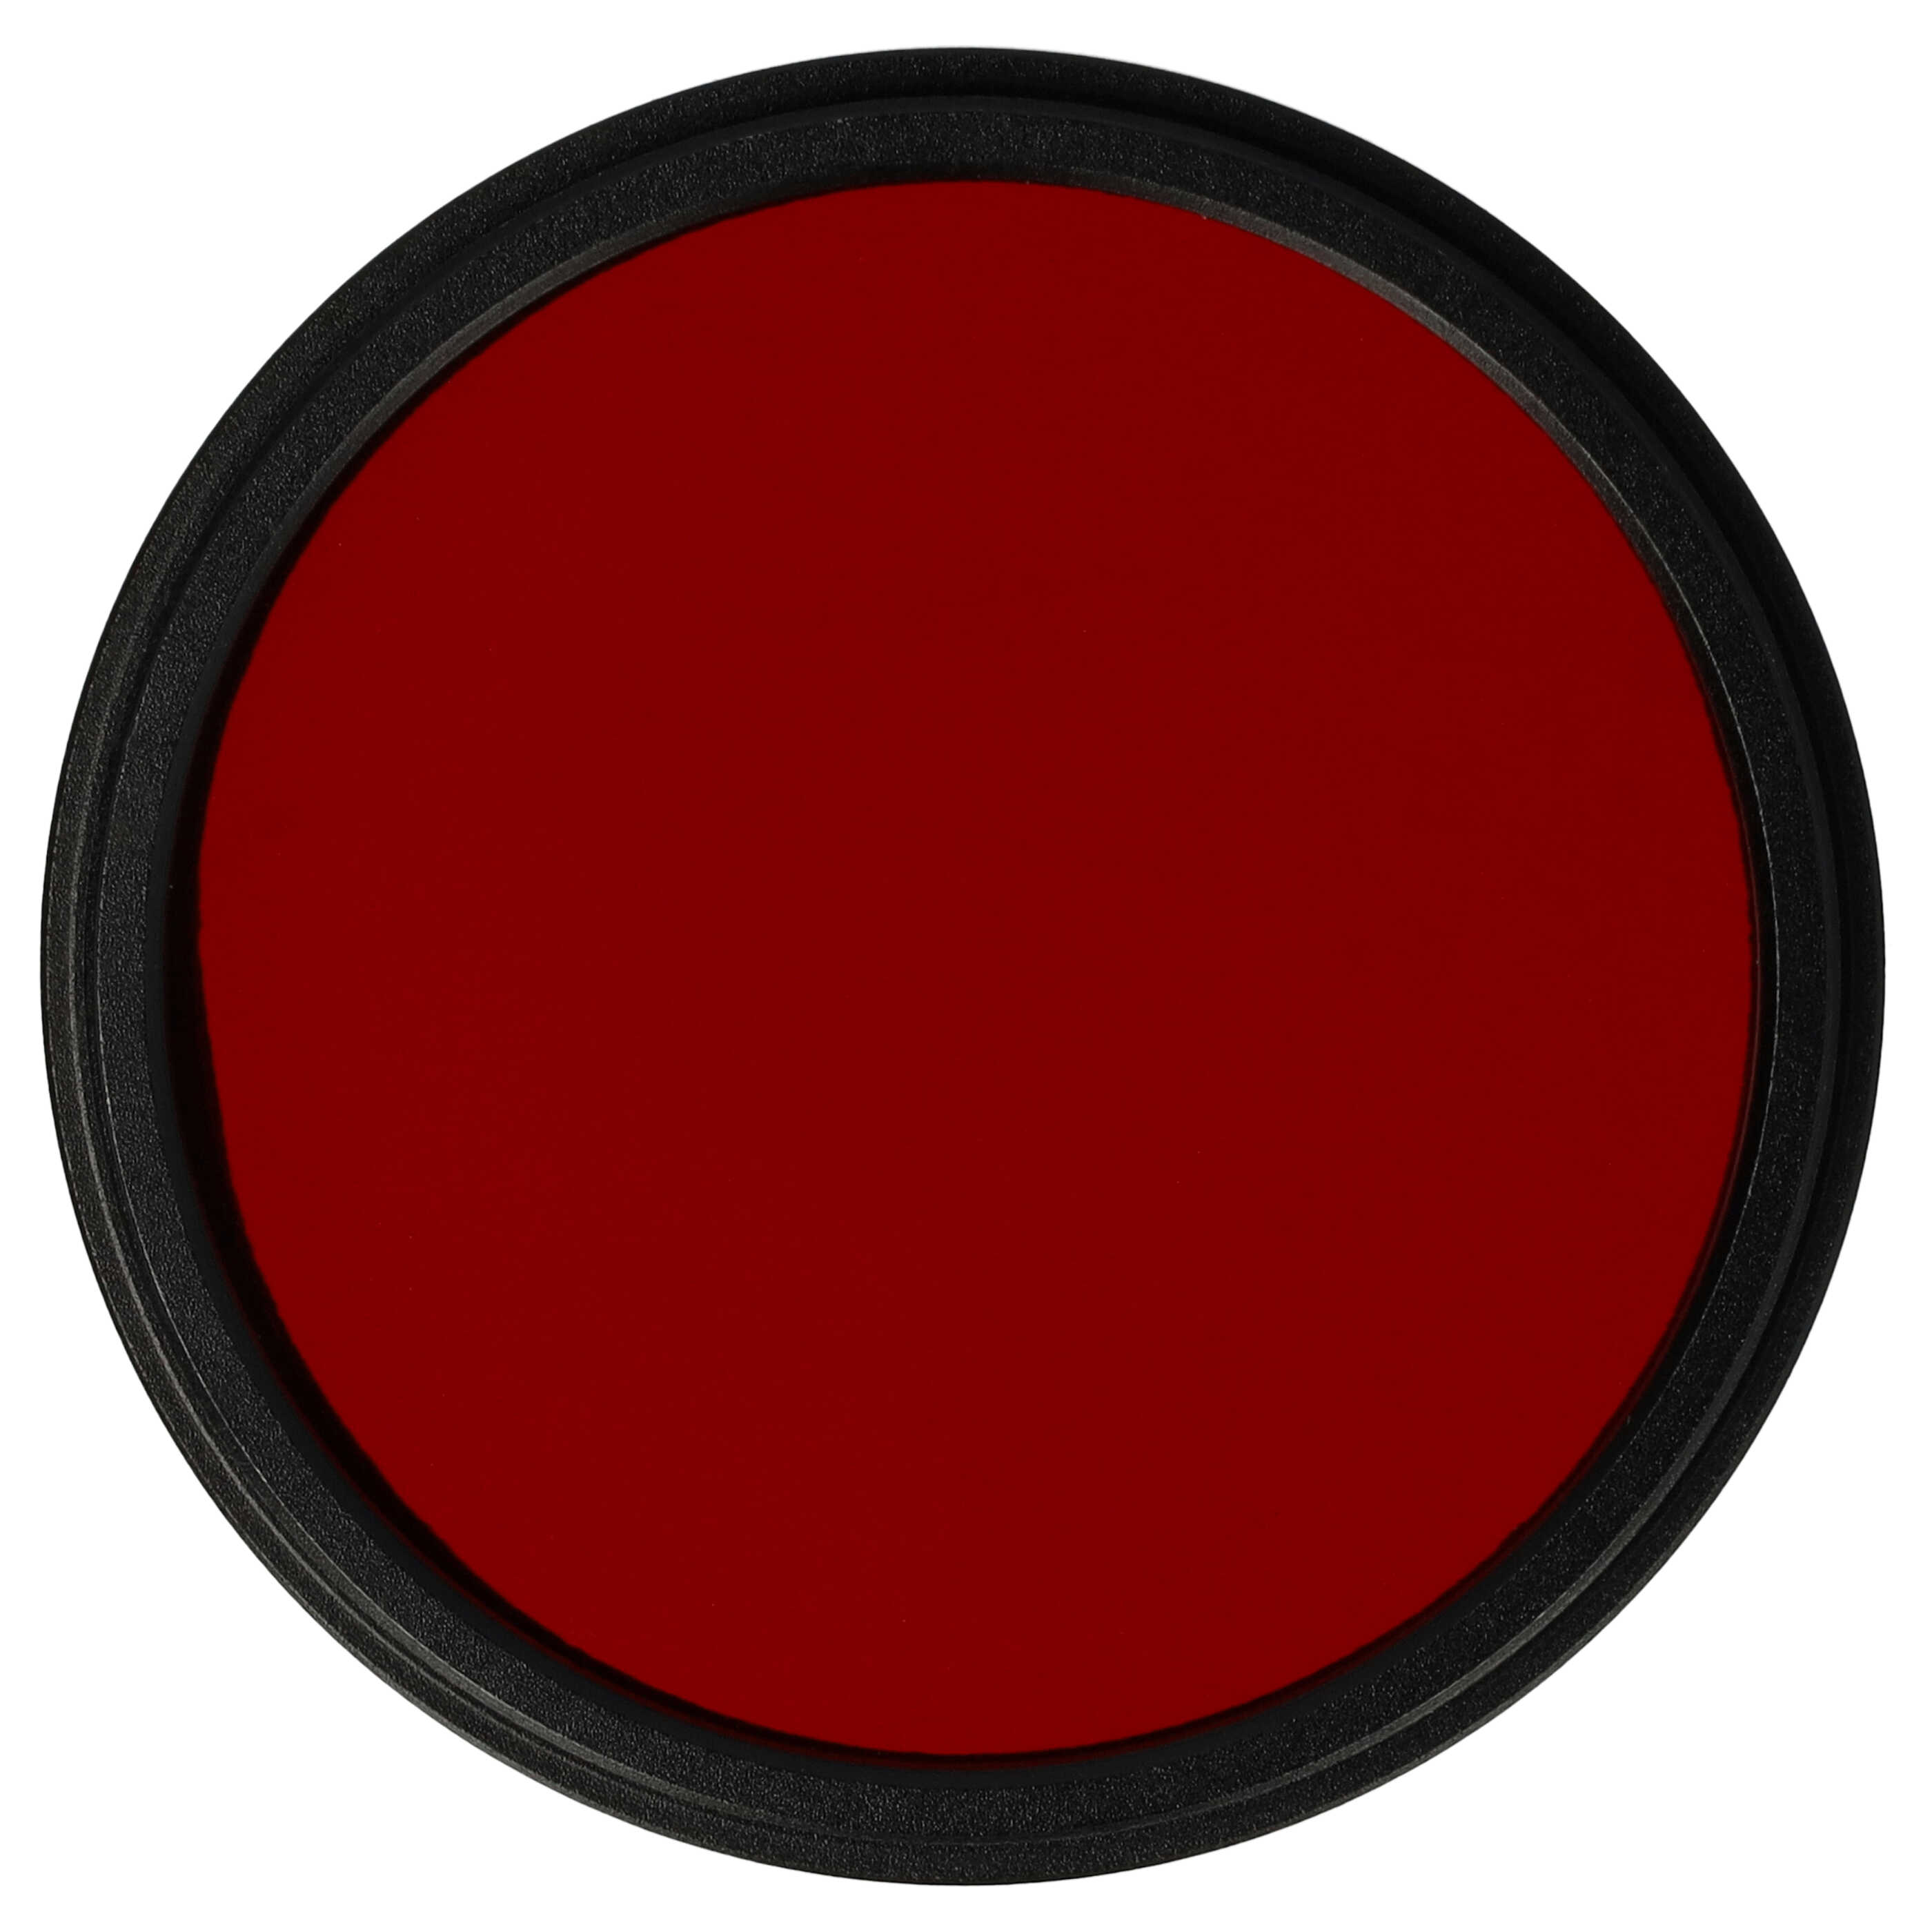 Filtre de couleur rouge pour objectifs d'appareils photo de 49 mm - Filtre rouge